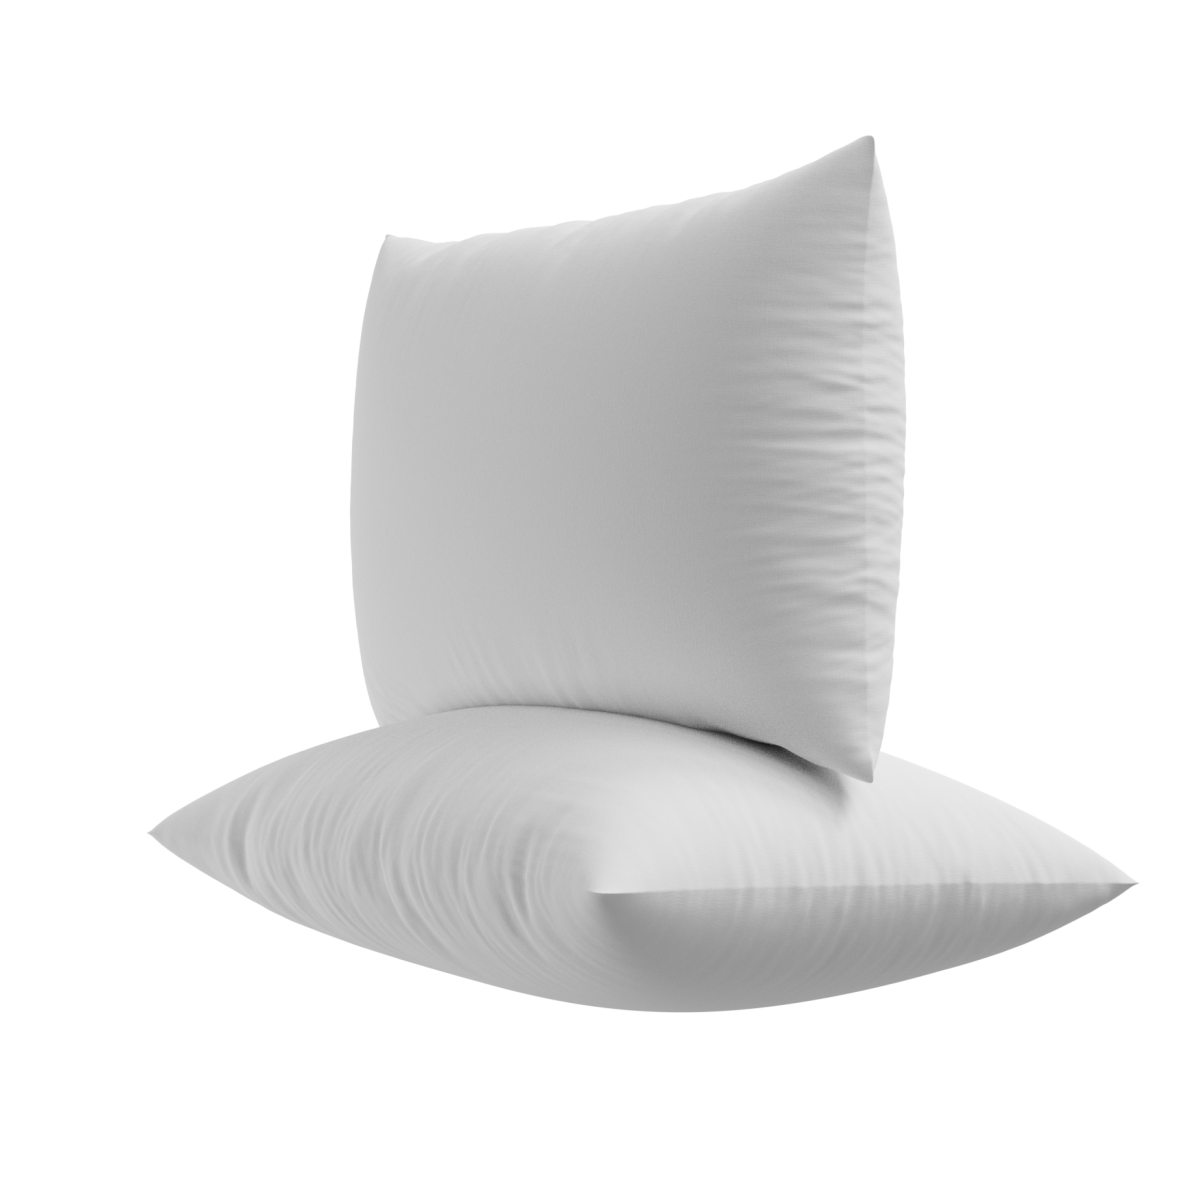 Utopia Bedding Throw Pillows Insert 4PK 22x22 and 4PK 20x20 Inches (White)